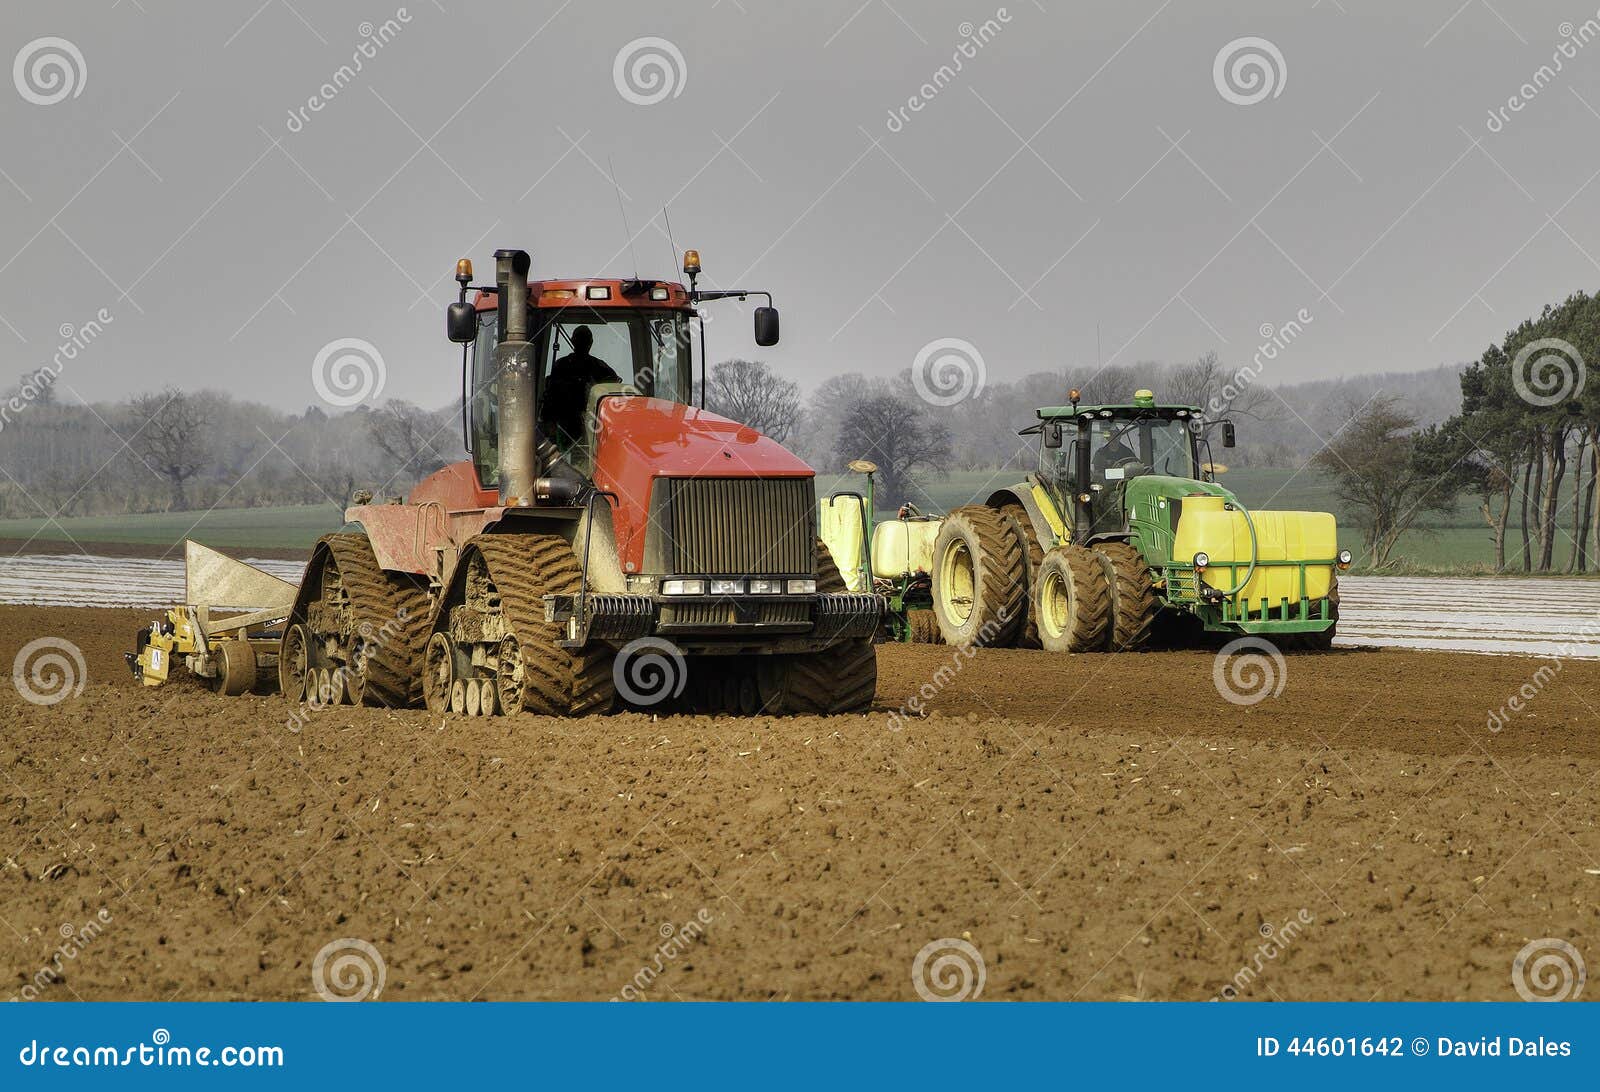 Anbaufläche und bohrender Mais. Traktor mit Bohrgerätsäenmais und -bedeckung es mit dem biologisch abbaubaren Polythen, zum von Keimung zu unterstützen Der Mais wird für Tierfutter oder Brennstoff für Kraftwerke benutzt Auch ein Traktor, der den Boden für das Säen vorbereitet